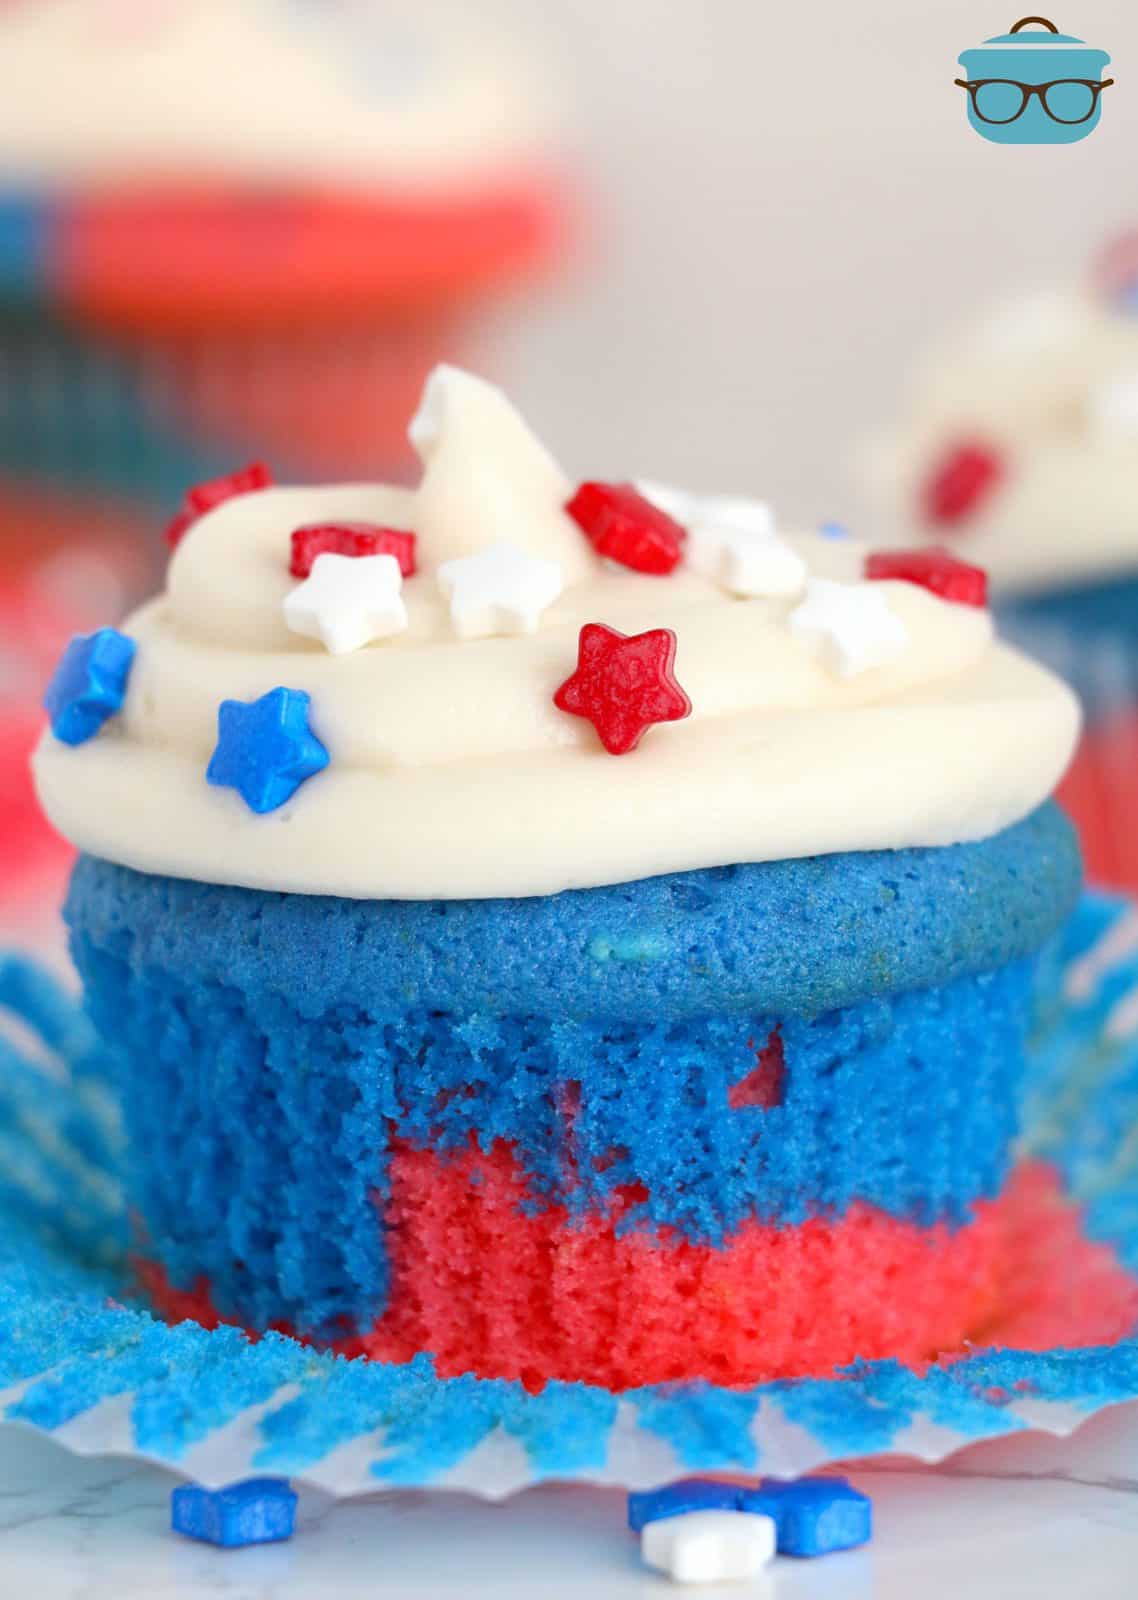 Cupcakes rossi, bianchi e blu con fodera di carta tirata verso il basso e glassati con granelli di stelle.